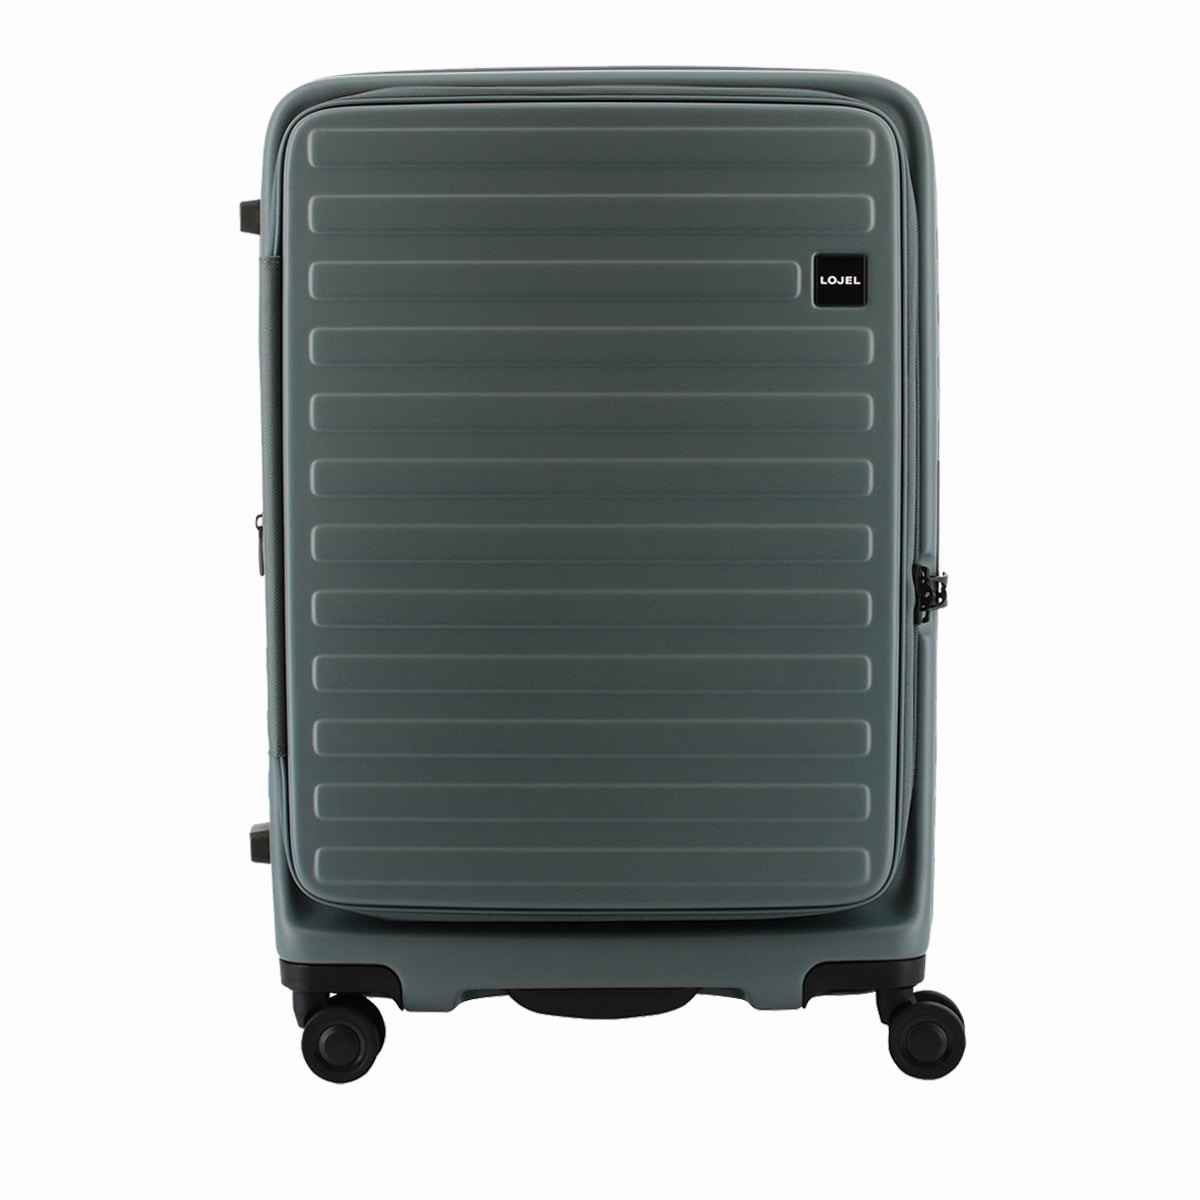 LOJELロジェールM Cubo グレー スーツケース - 旅行用バッグ/キャリー 